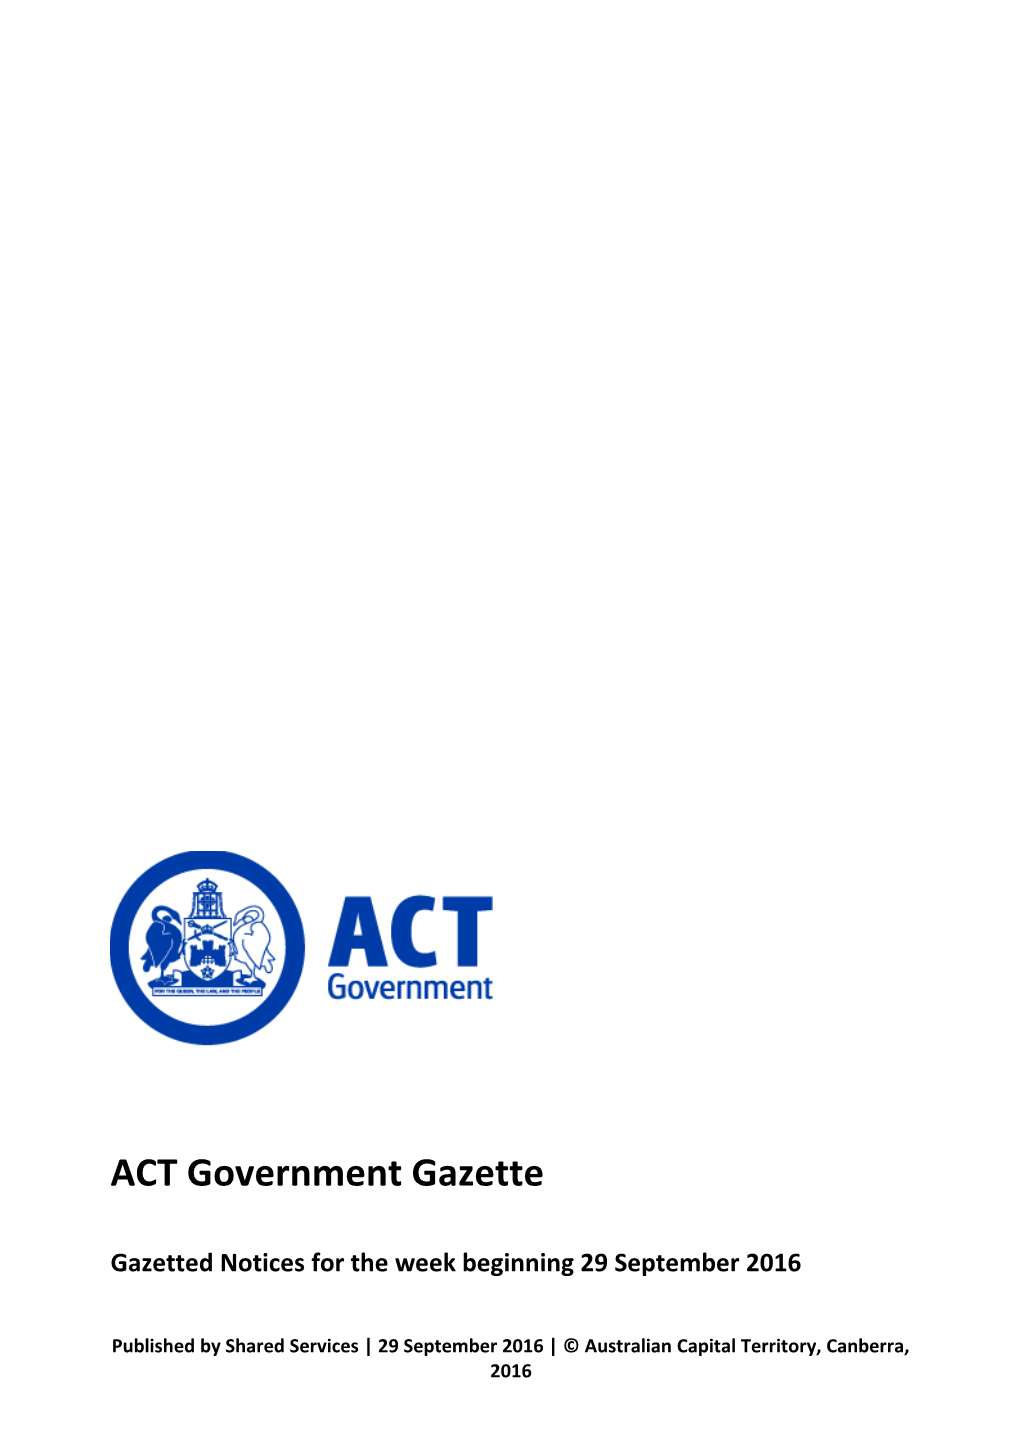 ACT Government Gazette 29 Sep 2016